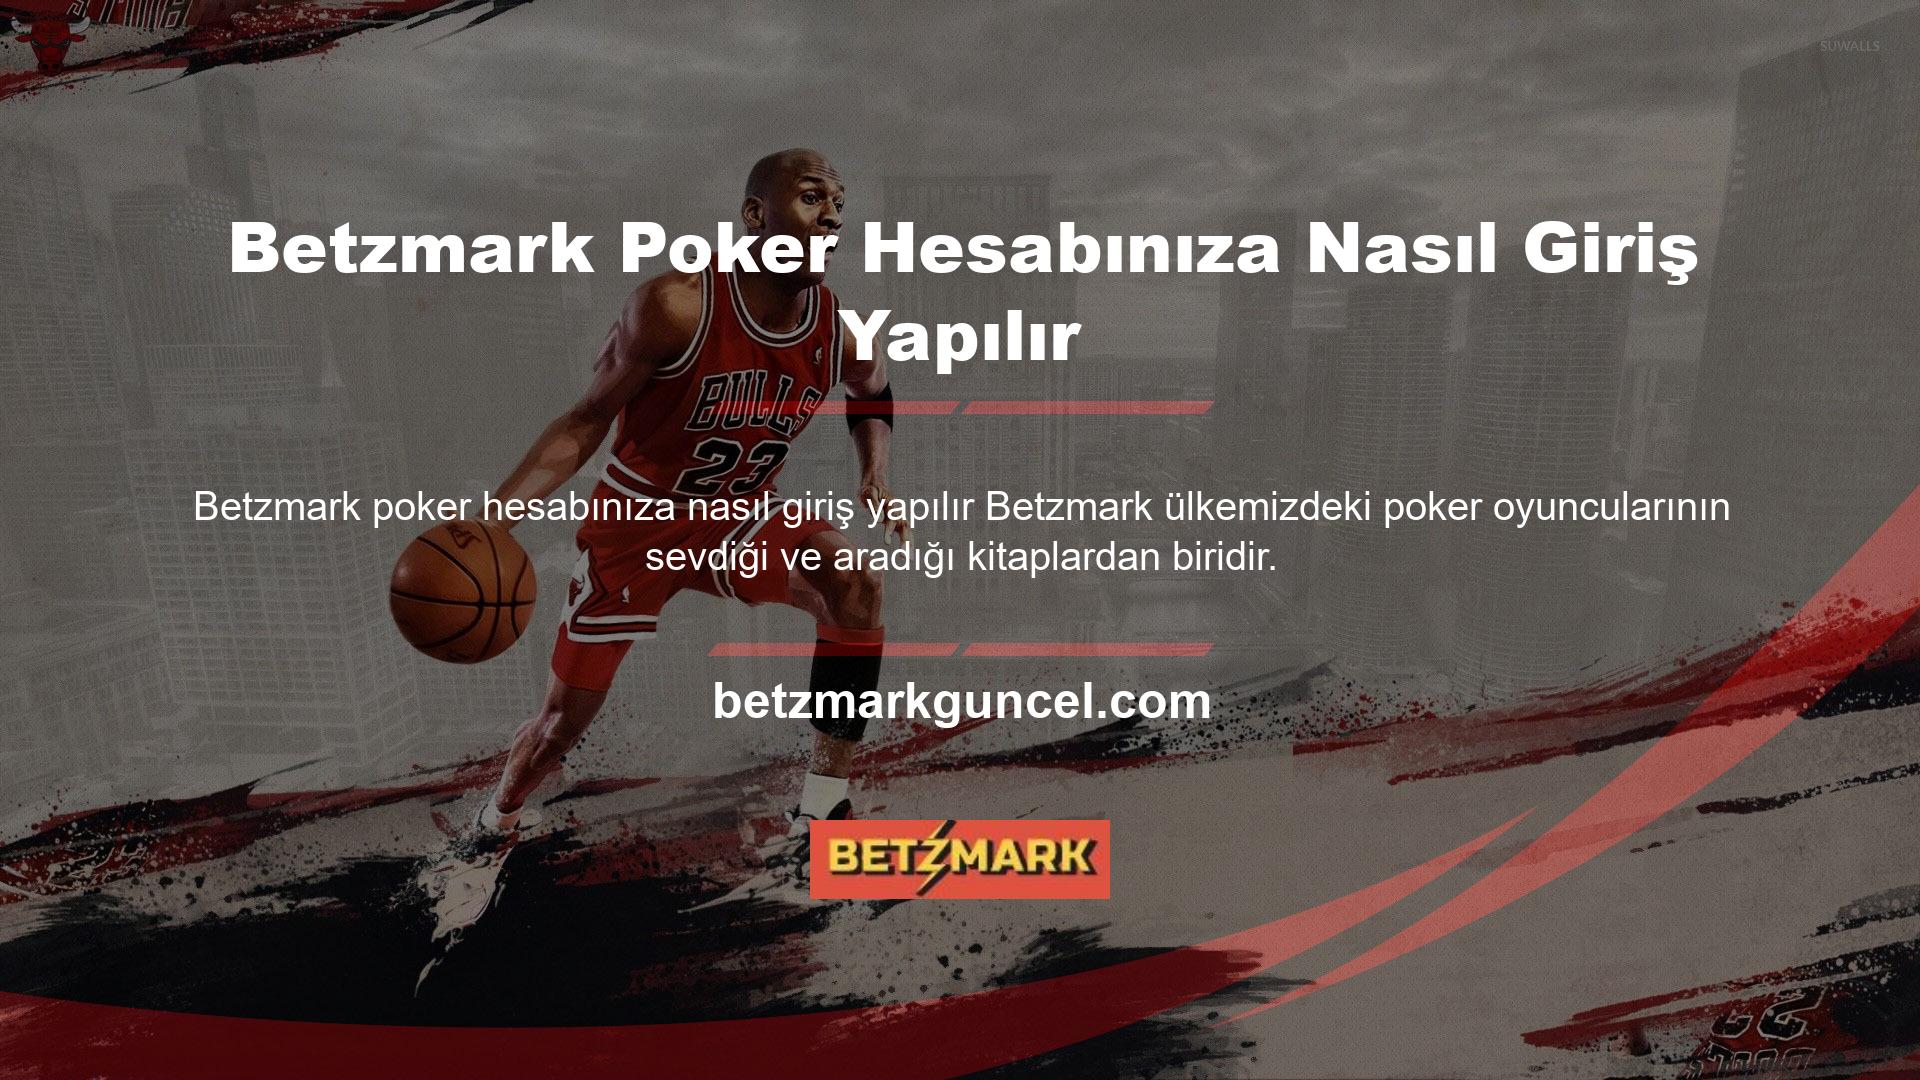 Slot makineleriyle ilgilenen herkes Türkiye'deki güvenli rulet siteleri hakkında bilgi edinmek ister